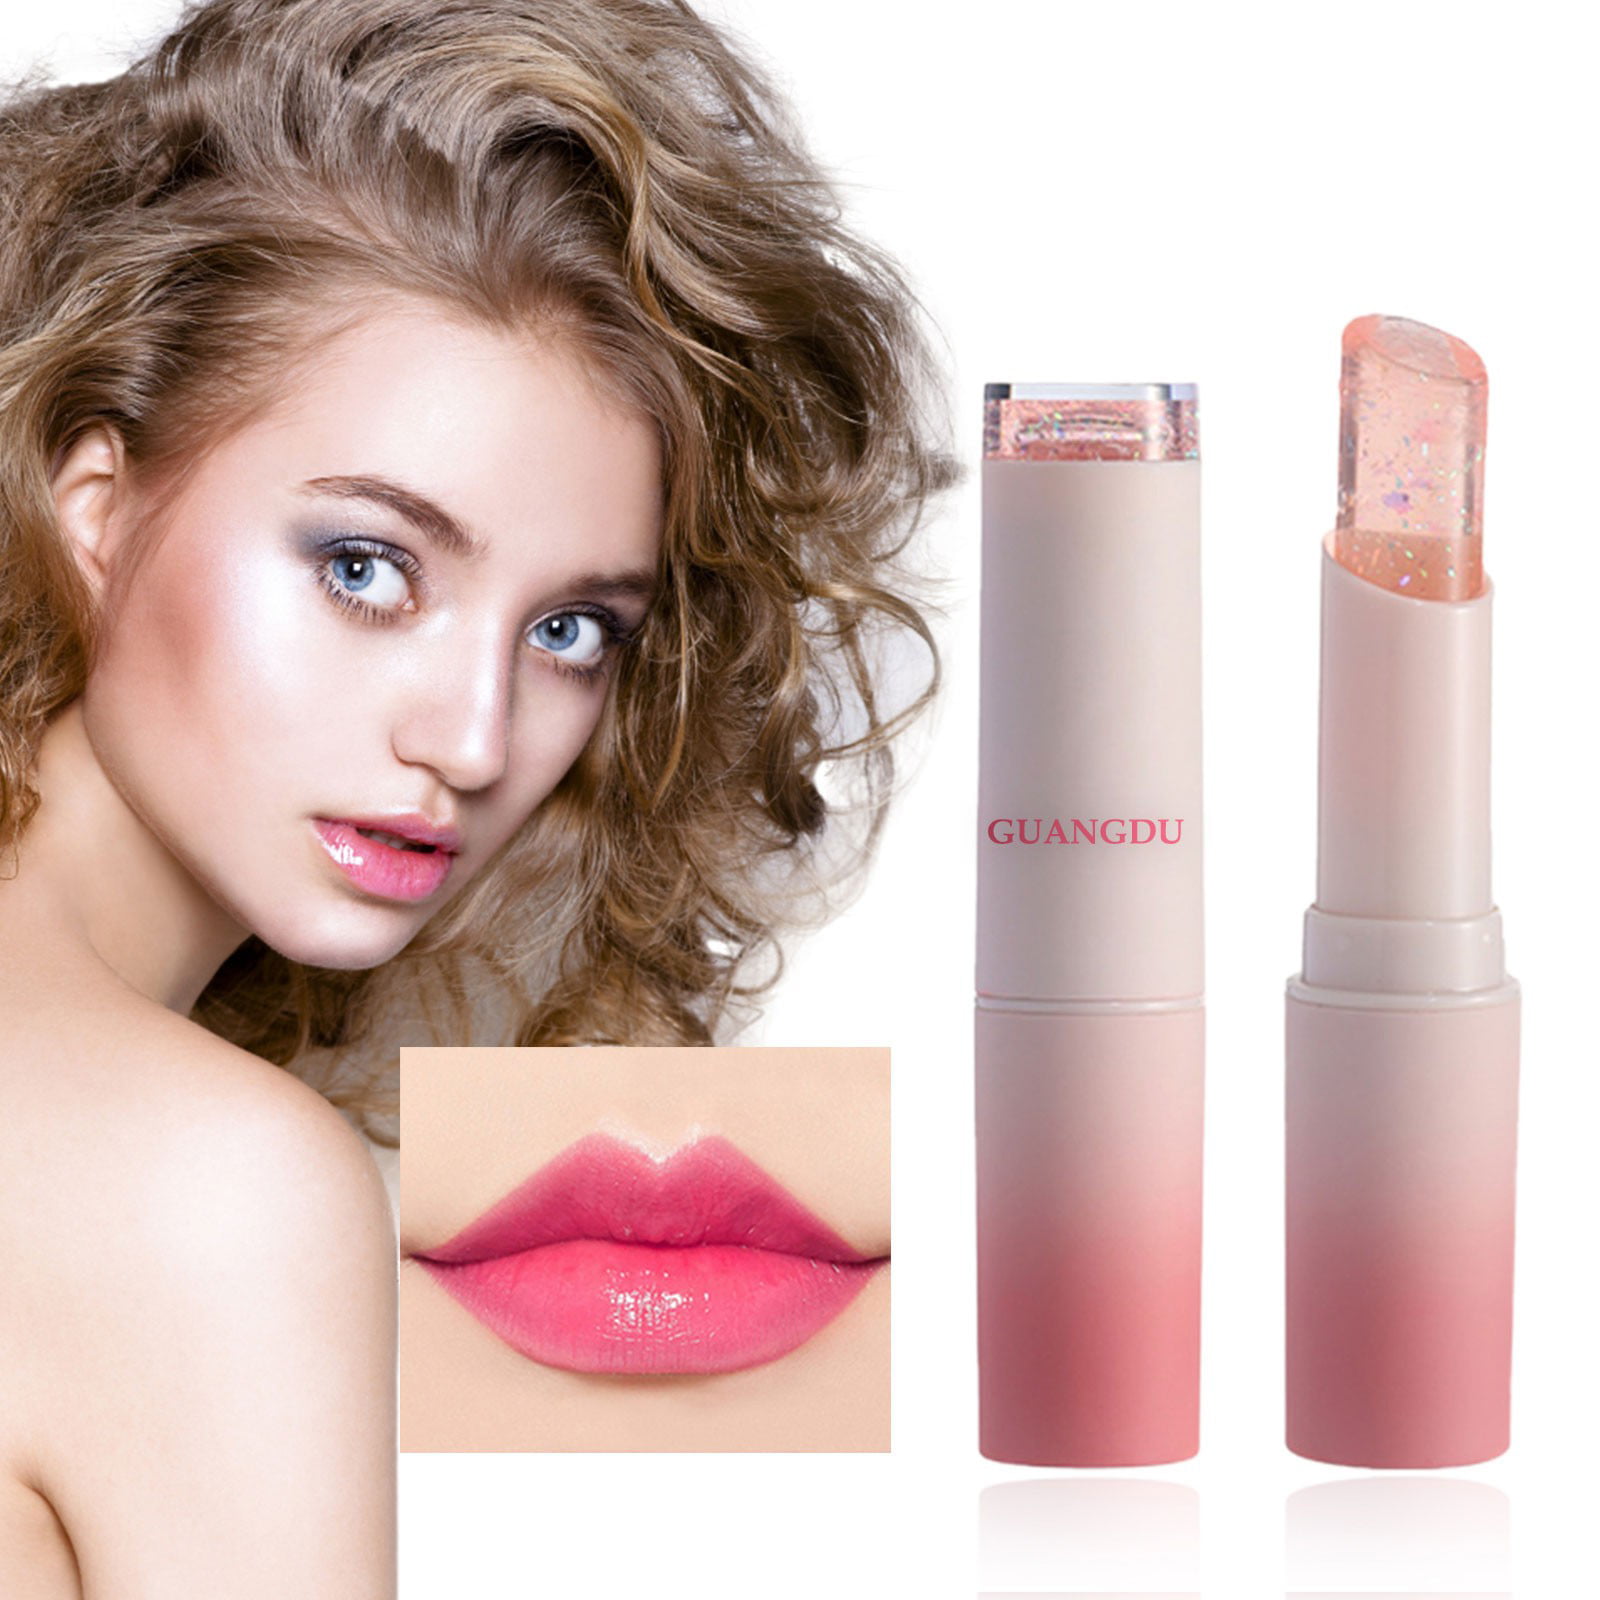 ASEIDFNSA Lip Gloss Flavoring Lip Gloss Glitter for Lip Gloss Making Lip  Glaze Mist Face Velvet Moisturizing Student Girl Lipstick Lipstick 3Ml